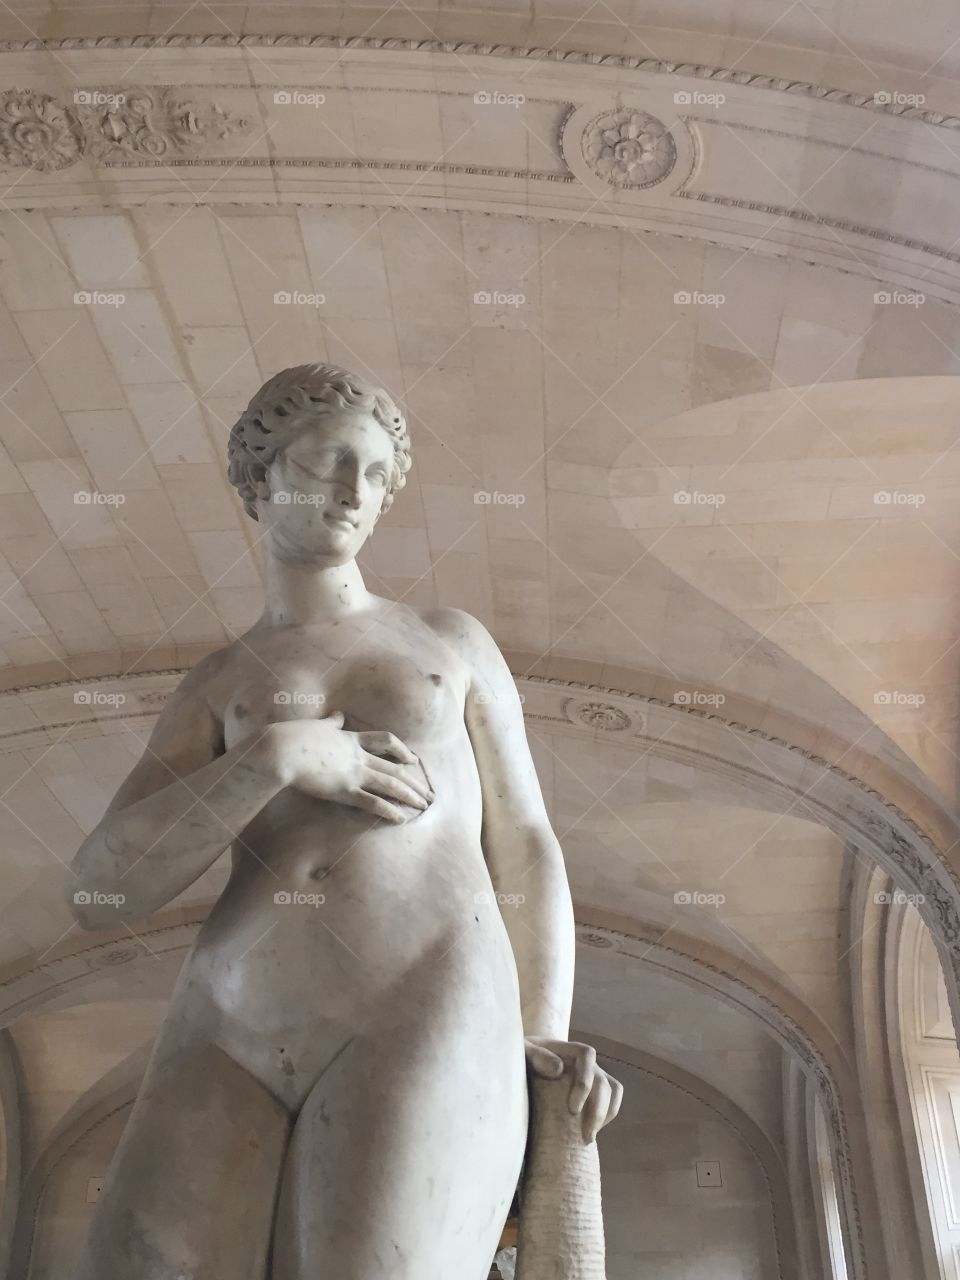 Statue in the Louvre. Statue in the Louvre.